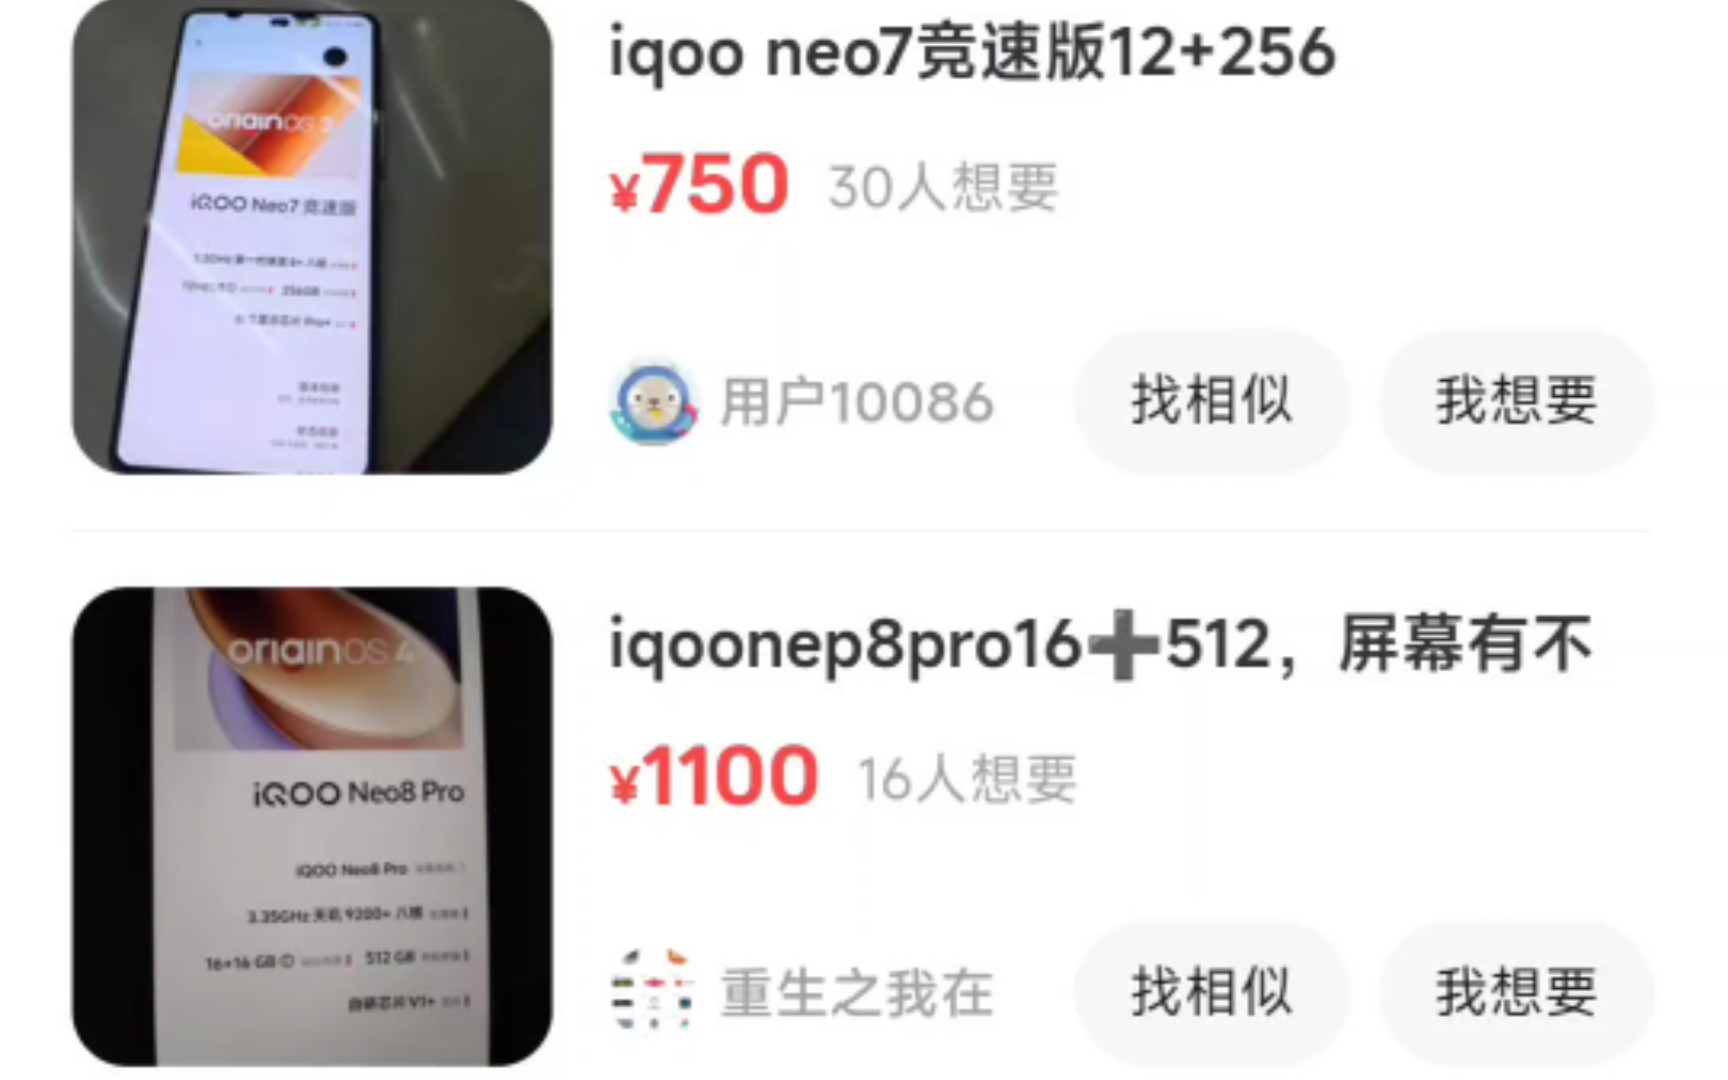 三部真香机我选择了900的iQOOneo8，希望不会翻车，要是有钱都买了，昨天晚上看到1000块的iQOOneo8pro没有买，后悔了